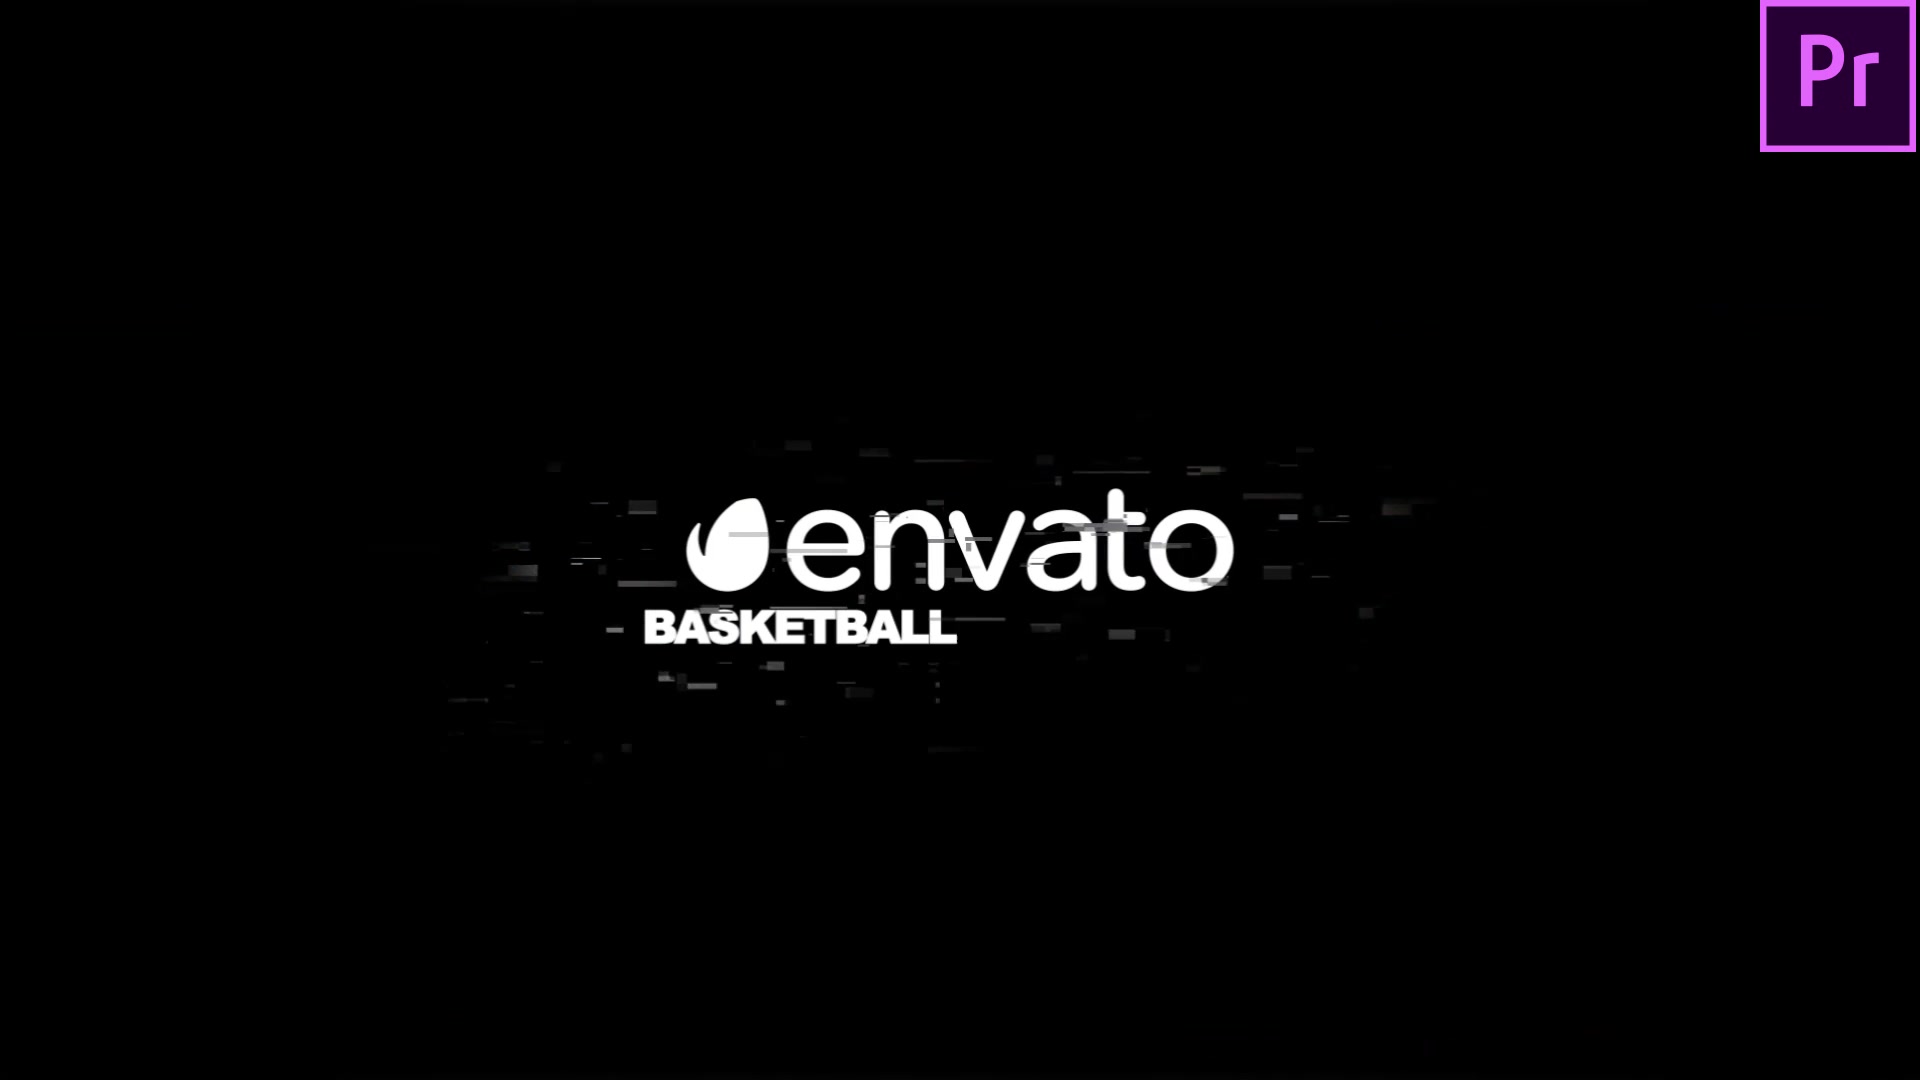 Basketball Game Promo Basketball Intro Premiere Pro Videohive 34205080 Premiere Pro Image 5